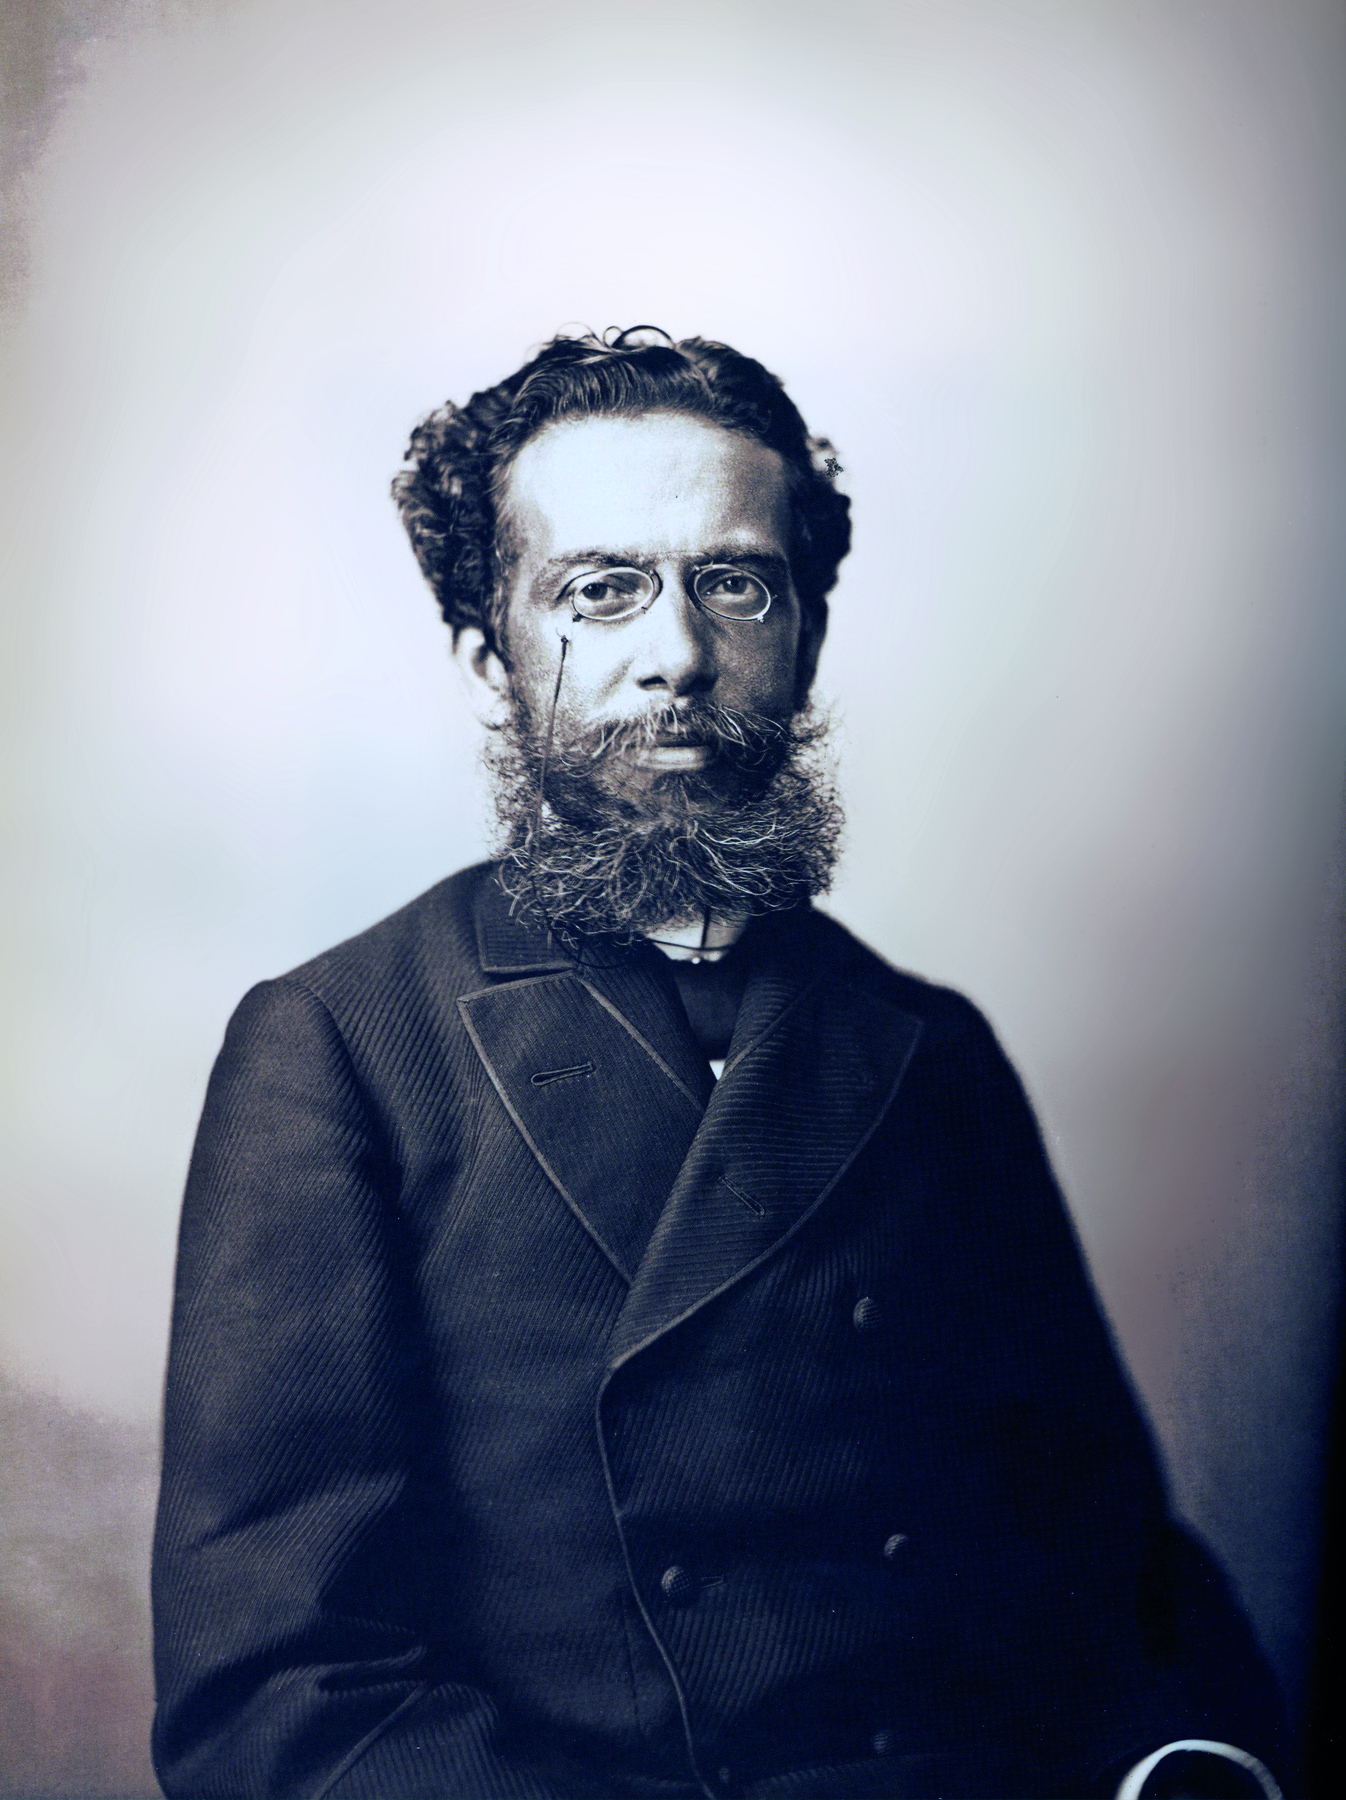 Fotografia em preto e branco. Retrato de um homem com cabelos curtos e barba grande, usando óculos e terno.